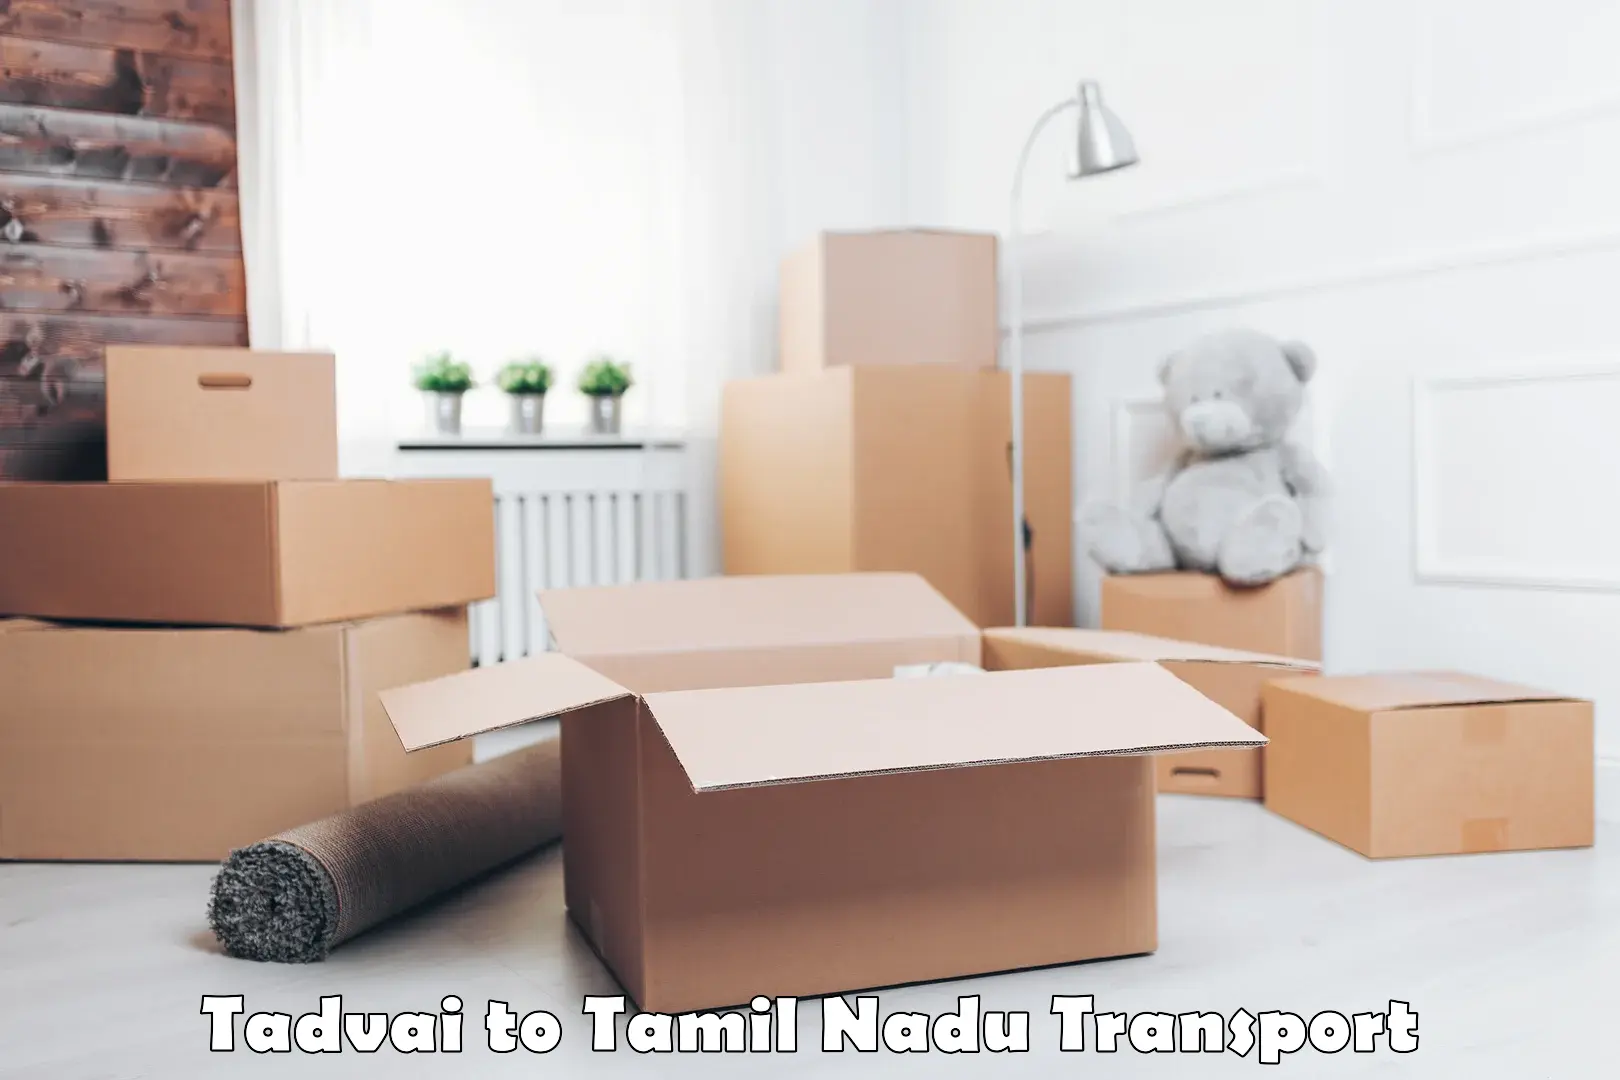 Transportation services Tadvai to Thiruvadanai